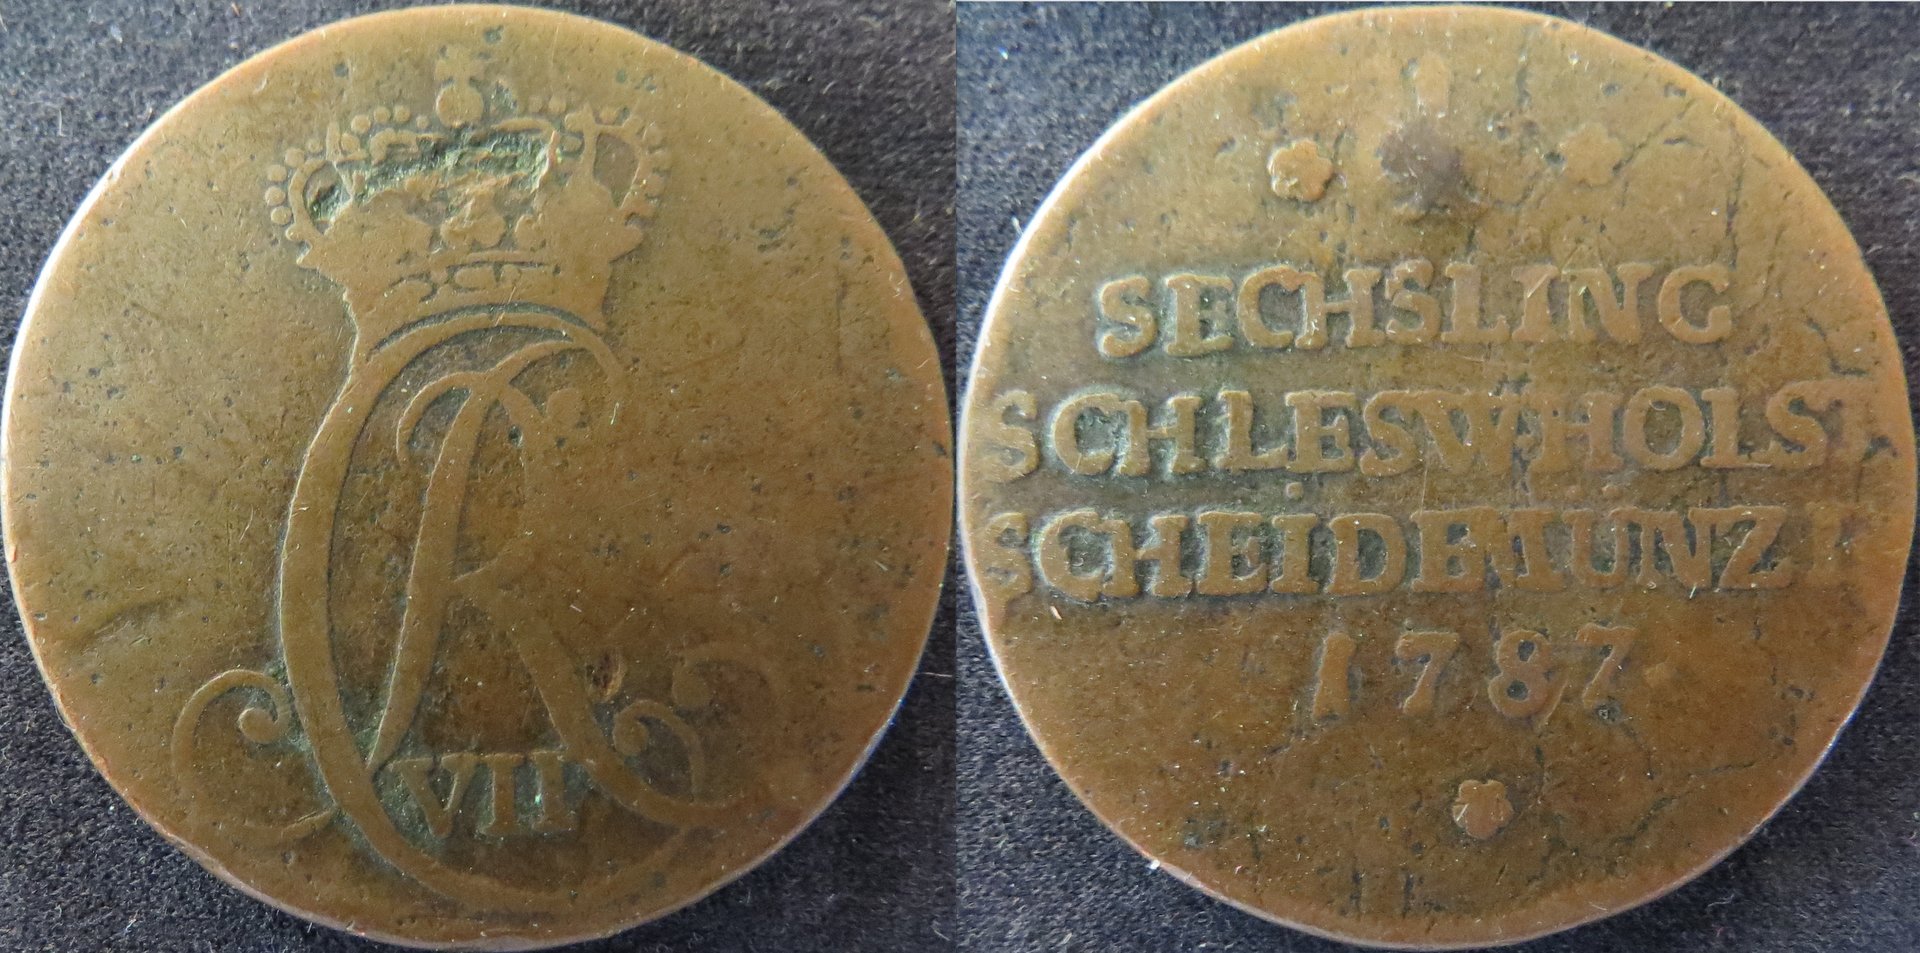 Schleswig-Holstein 1 Sechsling 1787.jpeg